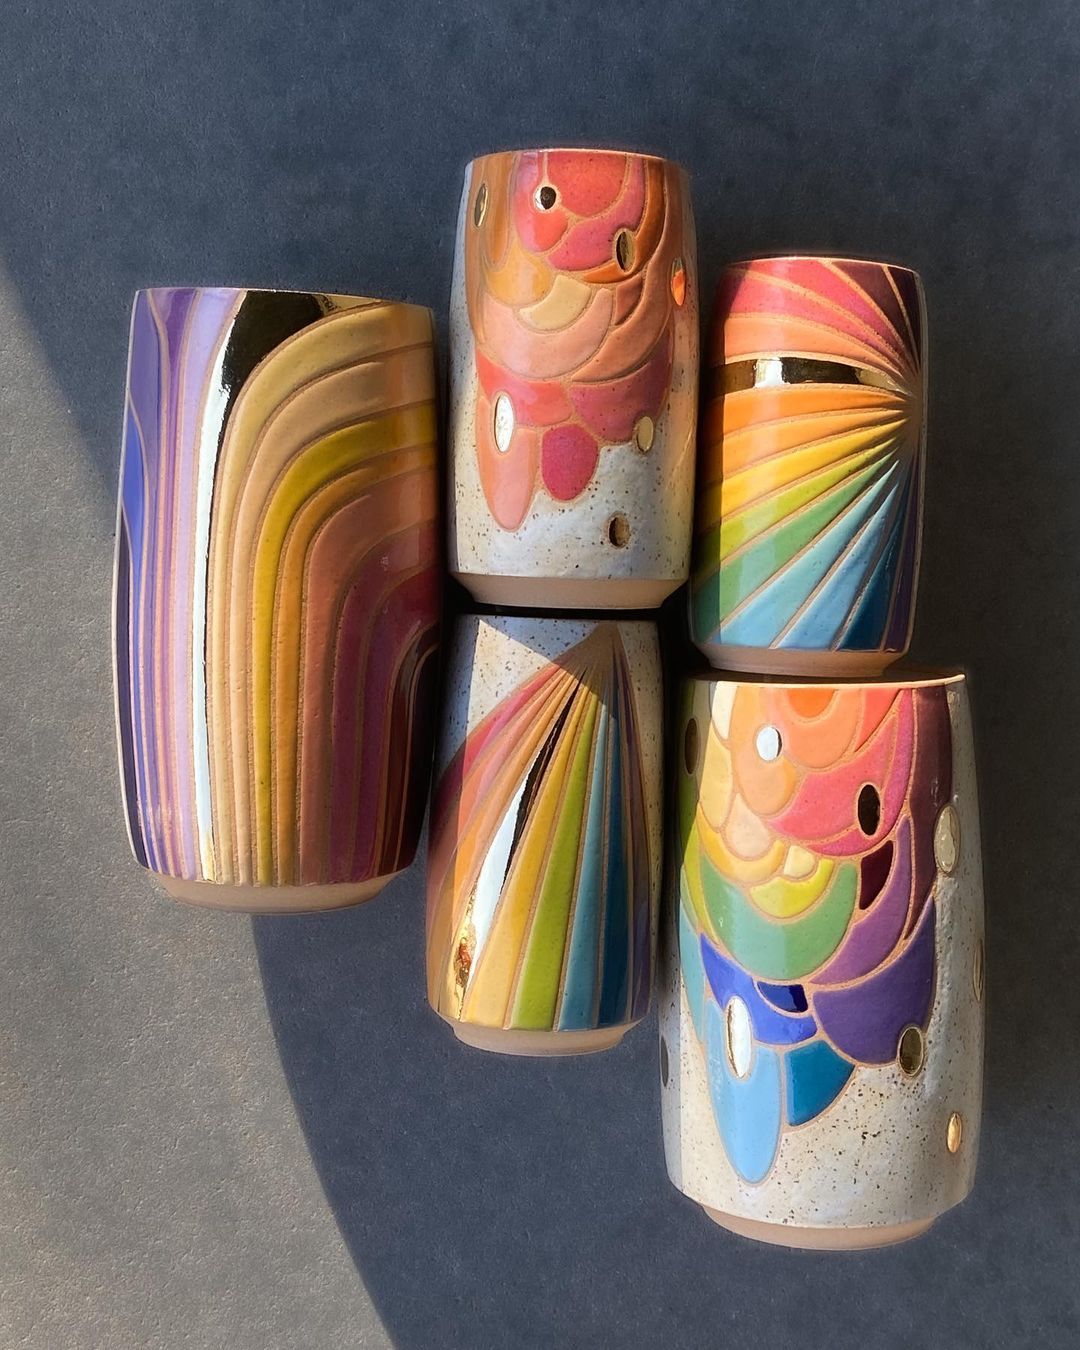 Rainbow Ceramics Gorgeous Multicolored Ceramic Pieces By Christine Tenenholtz (11)